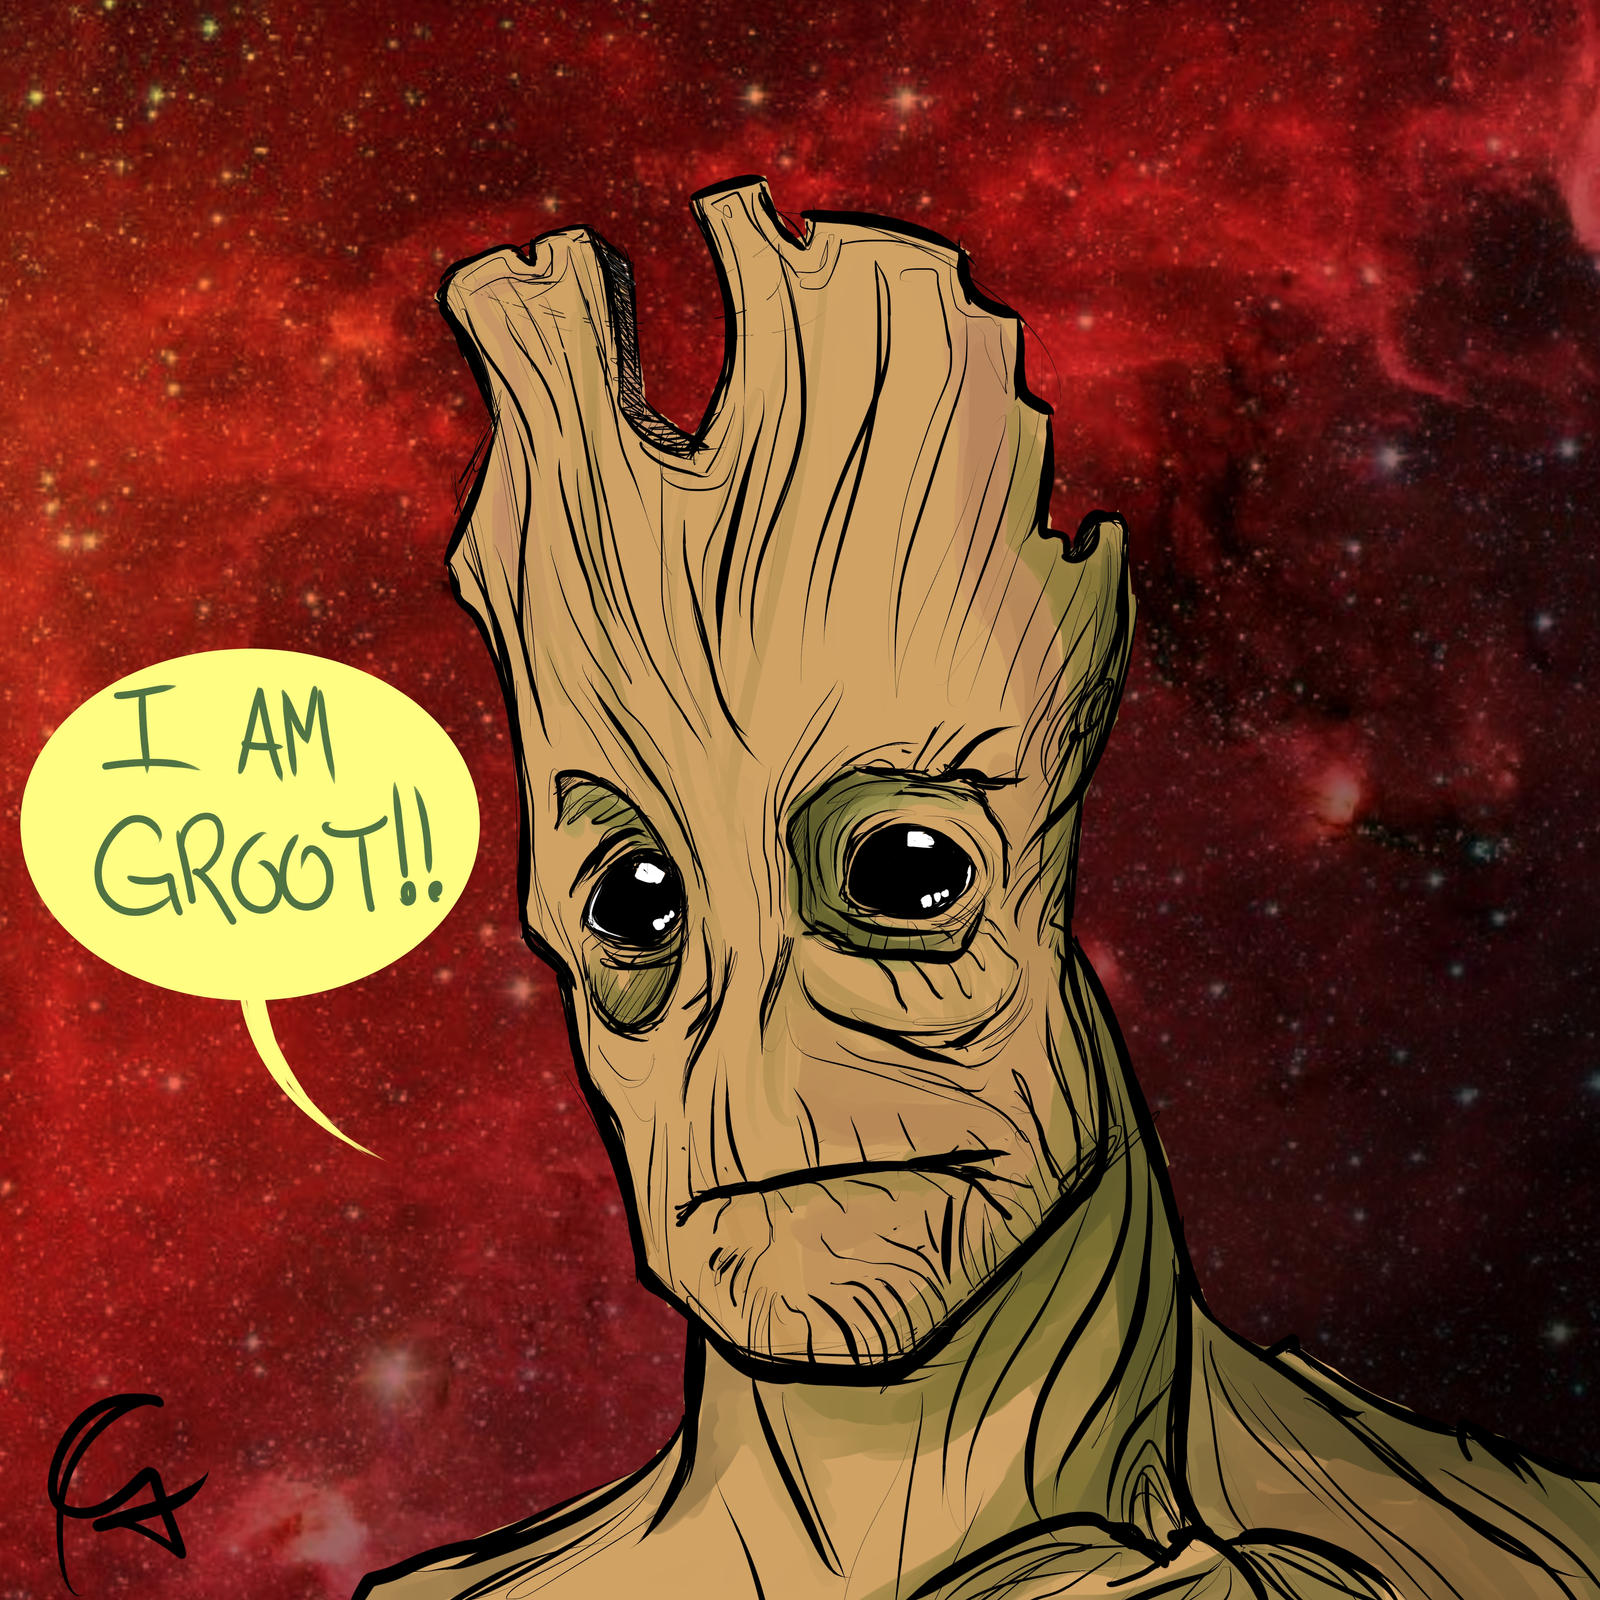 I am Groot!!